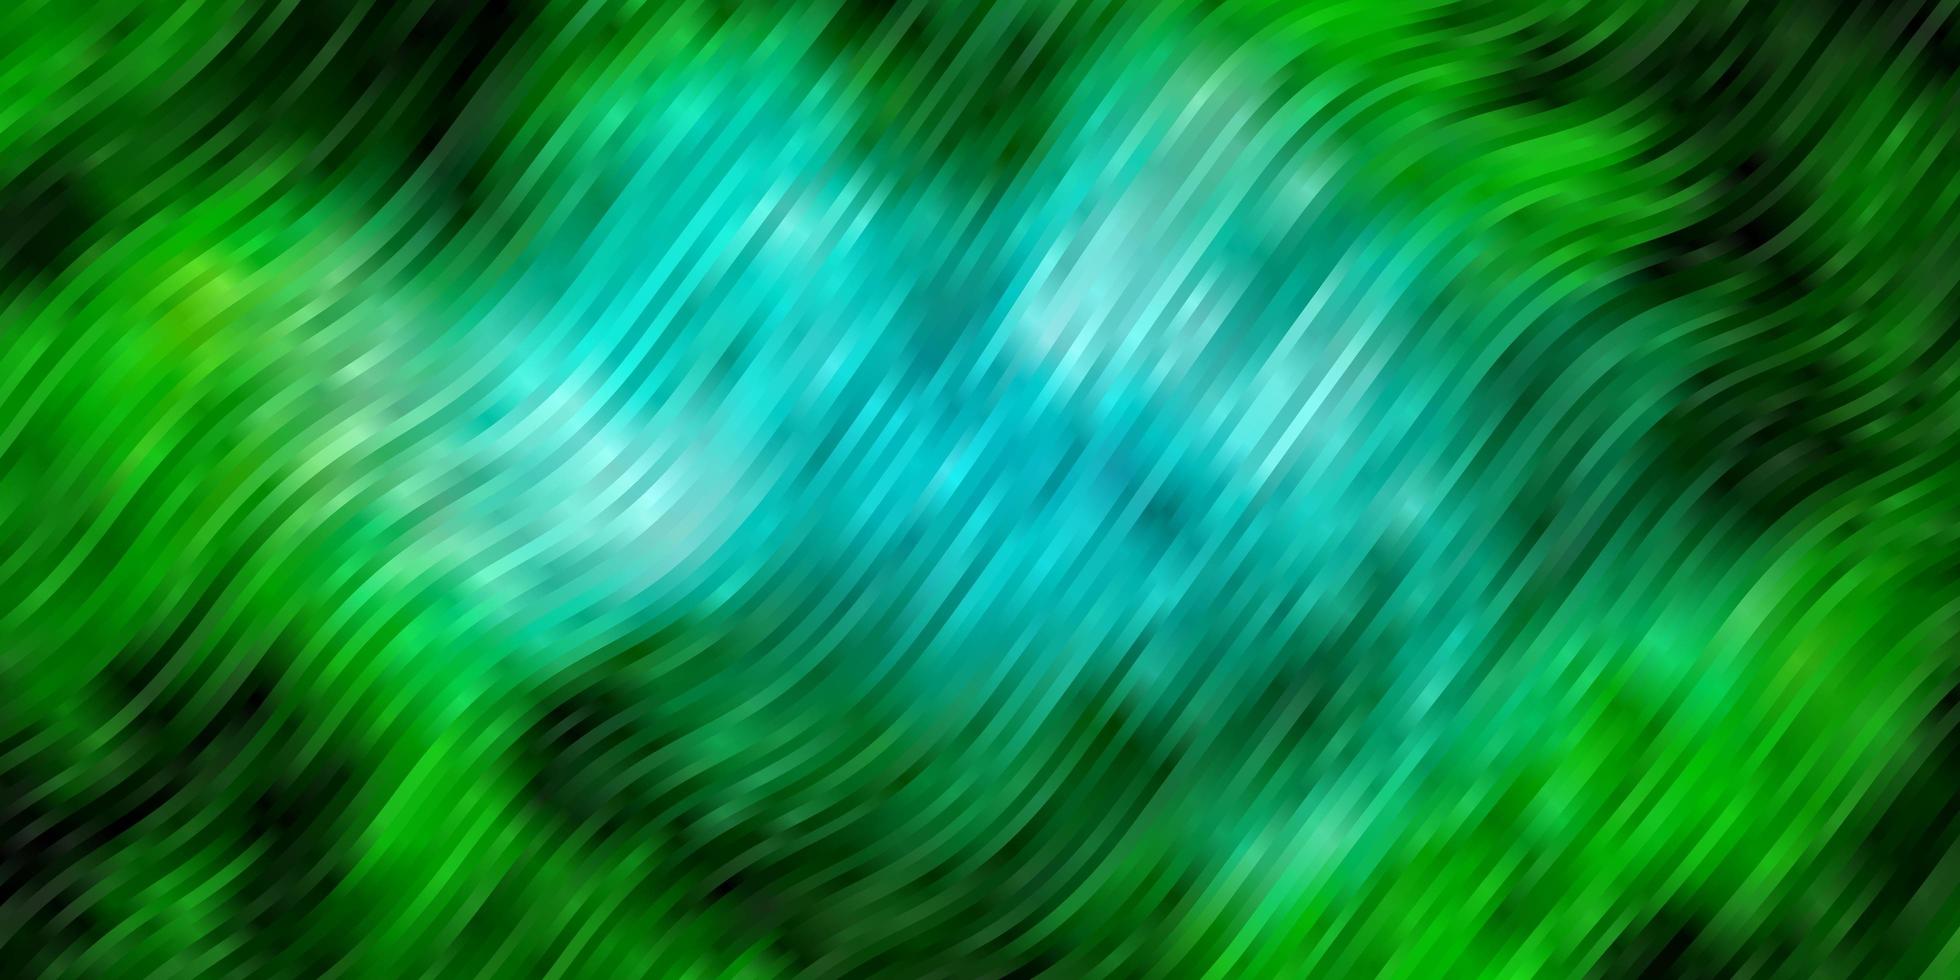 lichtblauw, groen vector sjabloon met curven.